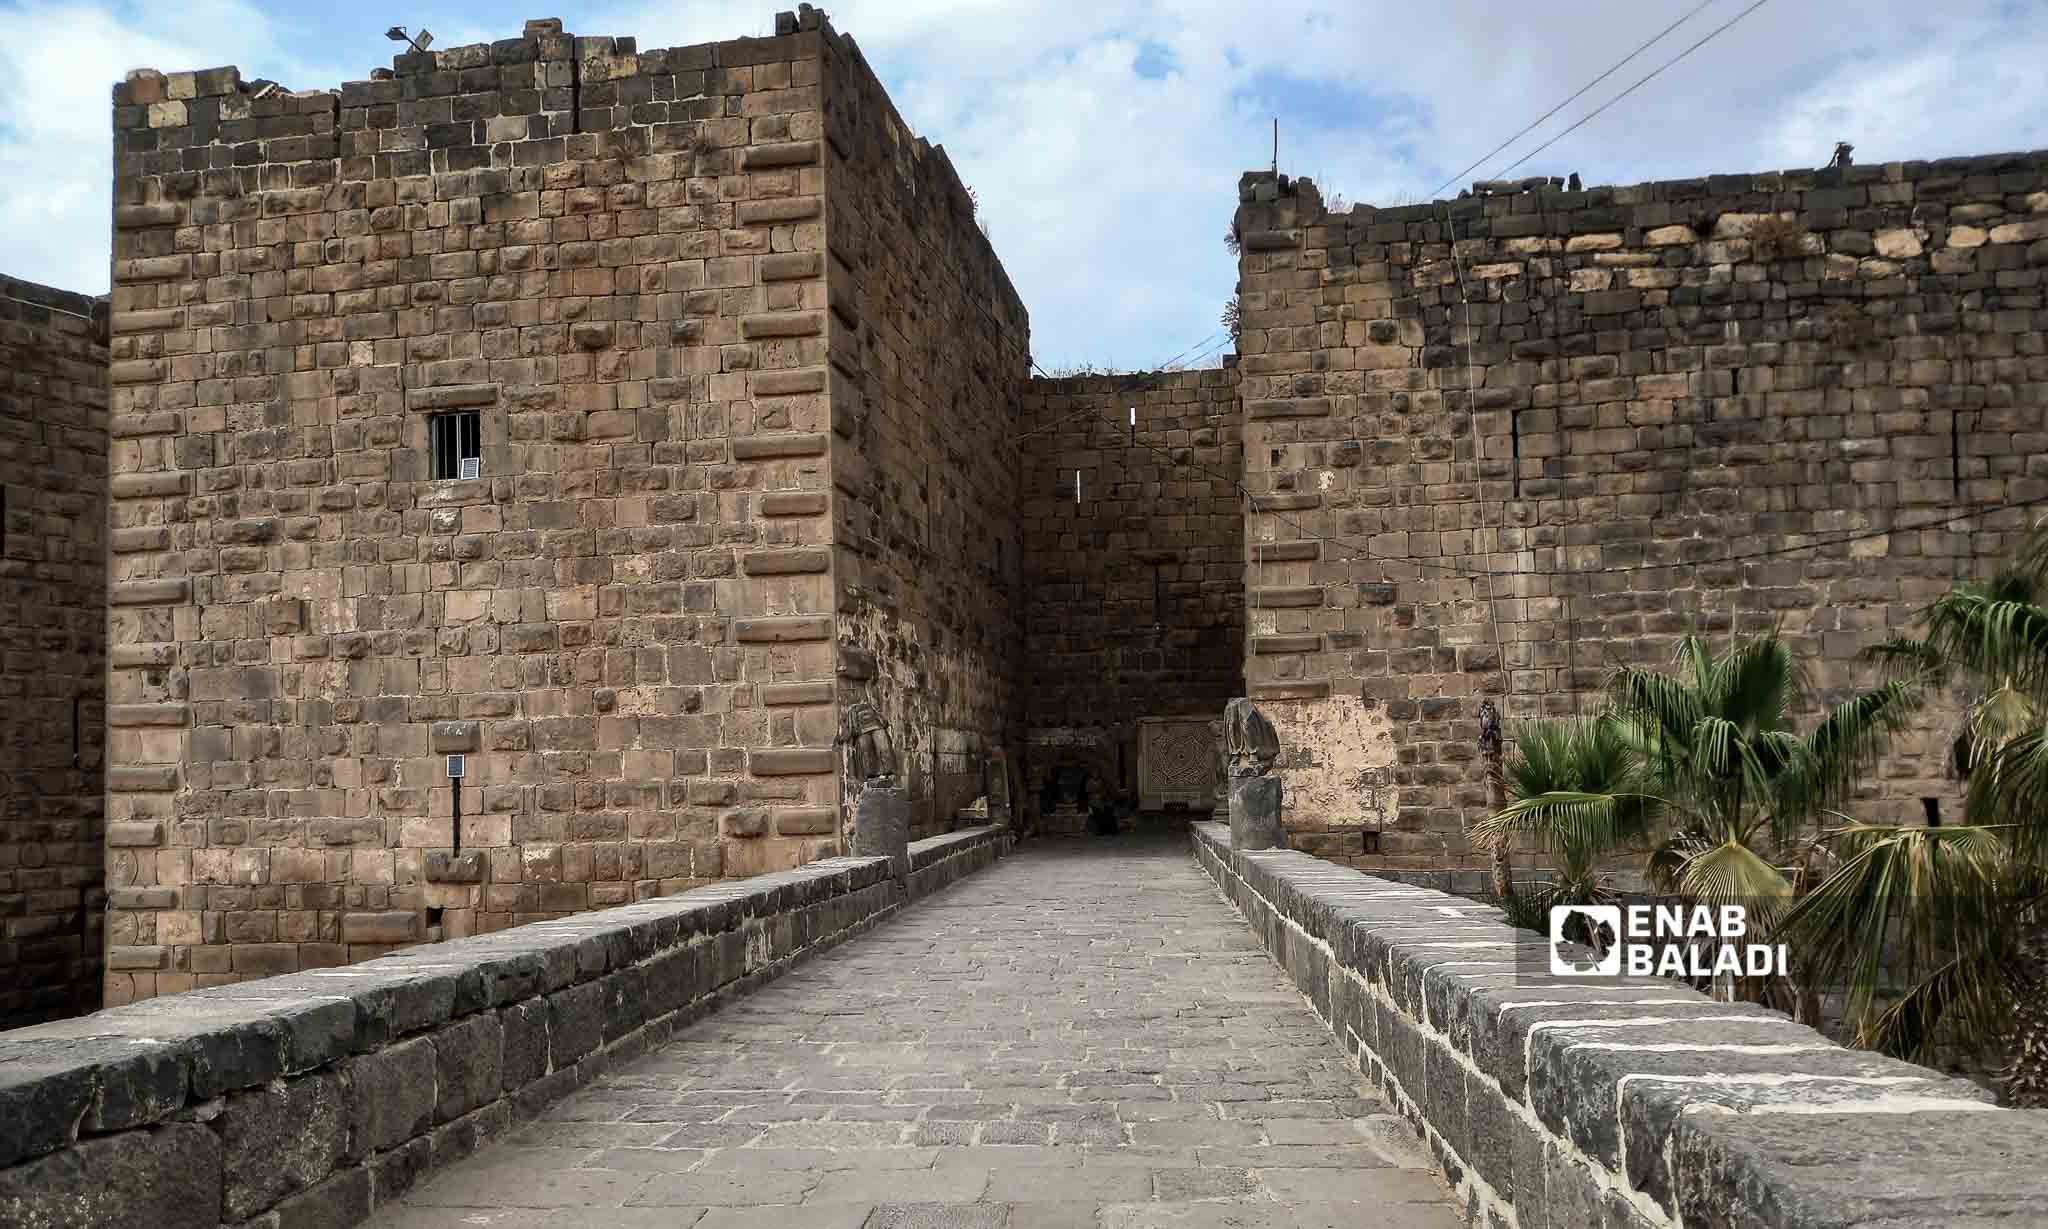 Busra al-Sham Castle in Daraa governorate, southern Syria - October 13, 2023 (Enab Baladi/Sarah al-Ahmad)
